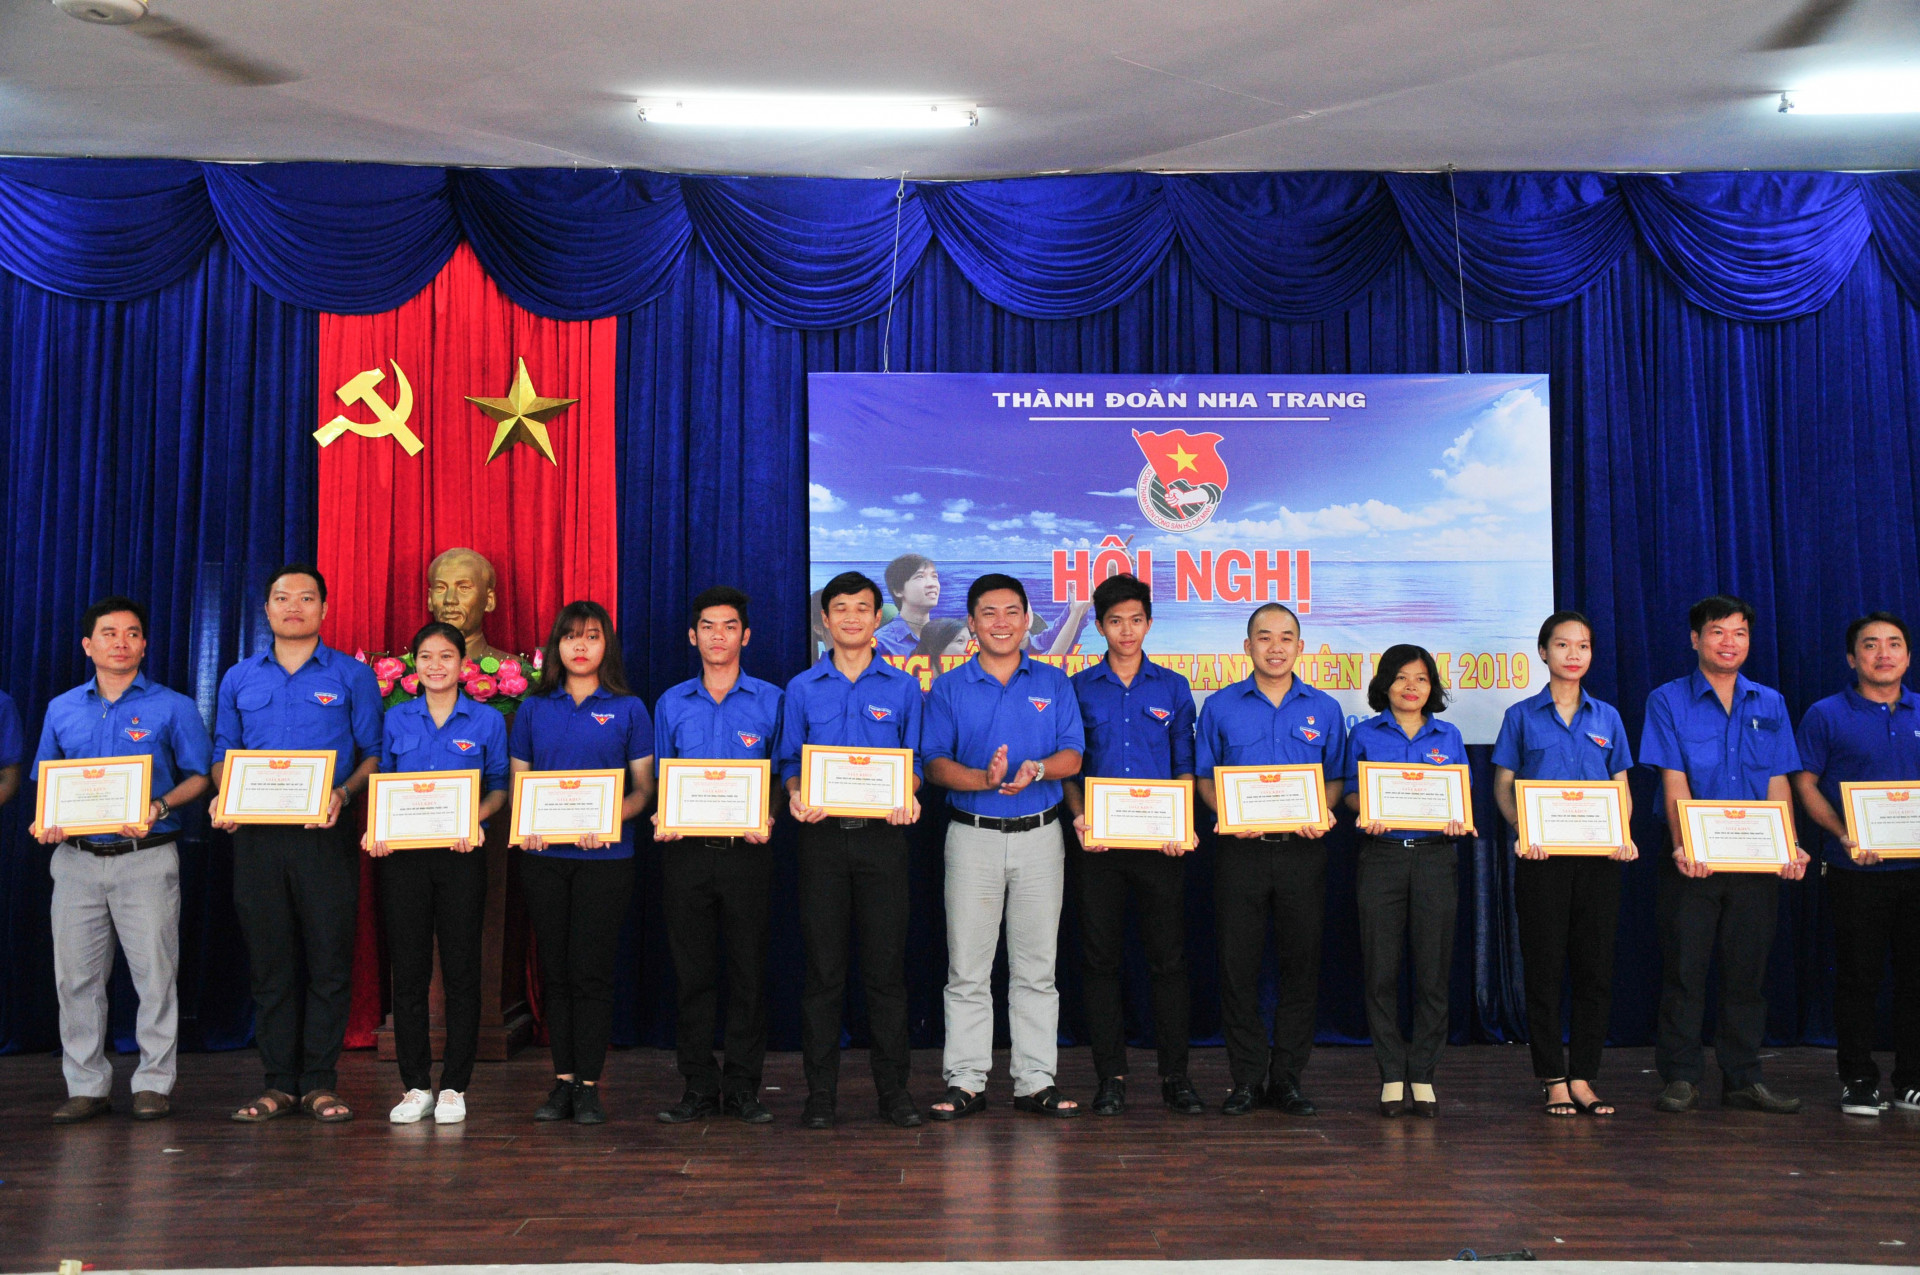 Thành đoàn Nha Trang khen thưởng các tập thể có thành tích trong Tháng thanh niên